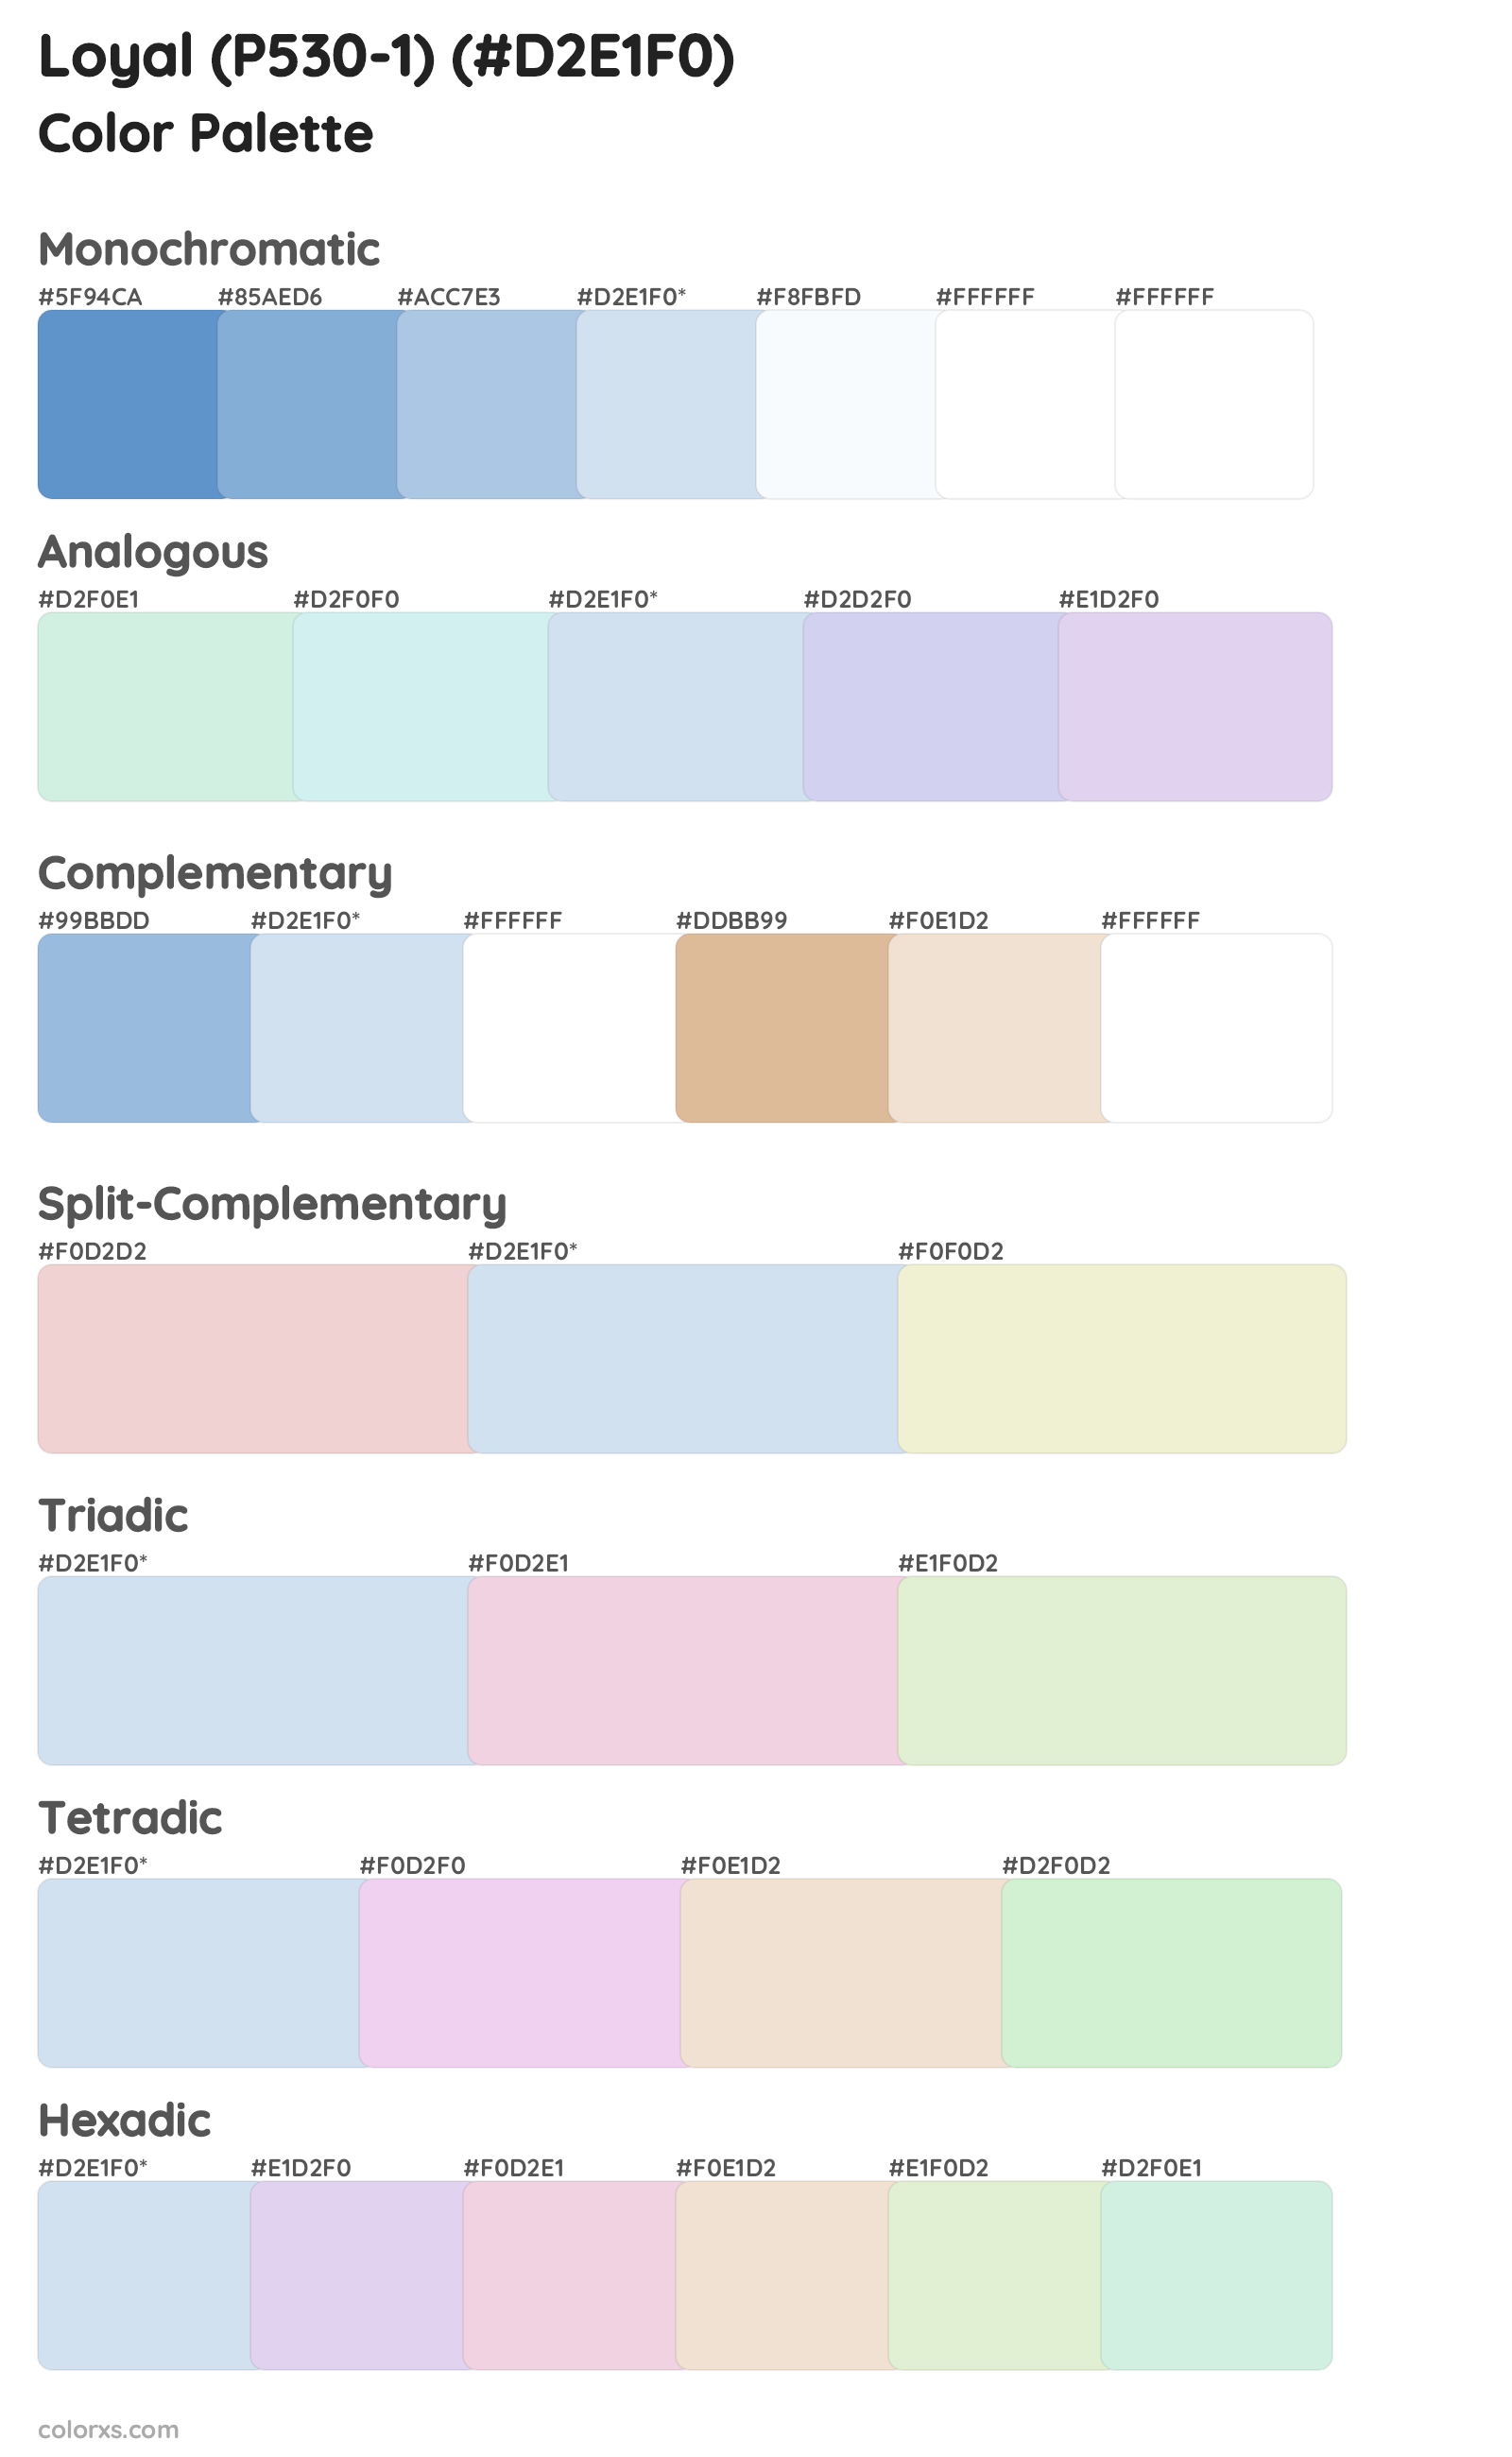 Loyal (P530-1) Color Scheme Palettes